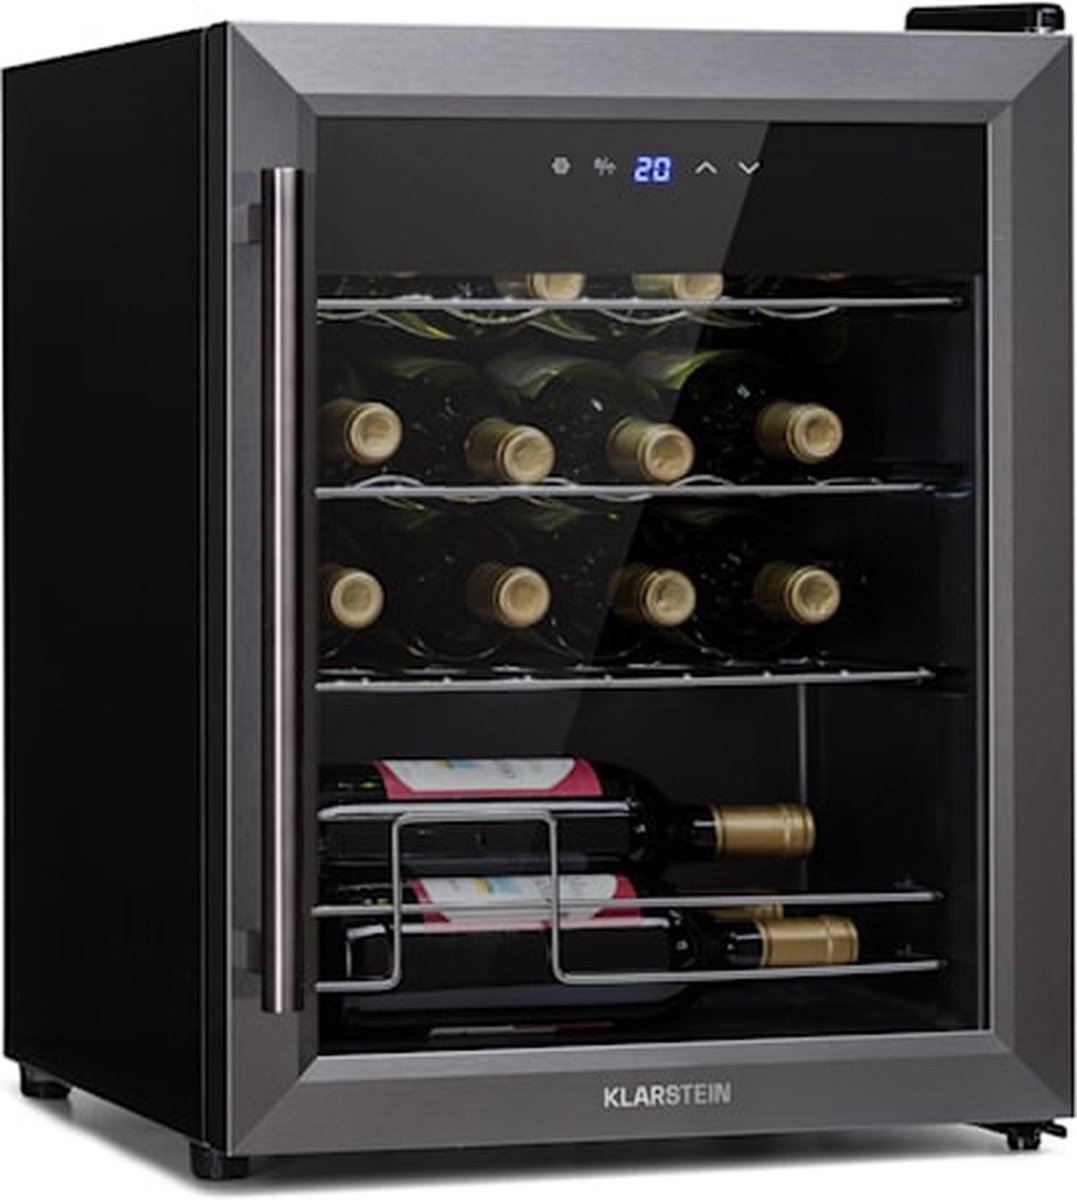 Klarstein Ultimo 16 Uno wijnkoelkast - 42 liter - 5 tot 18 °C - ruimte voor 16 flessen van 0,75 liter - glazen panoramadeur met UV-bescherming